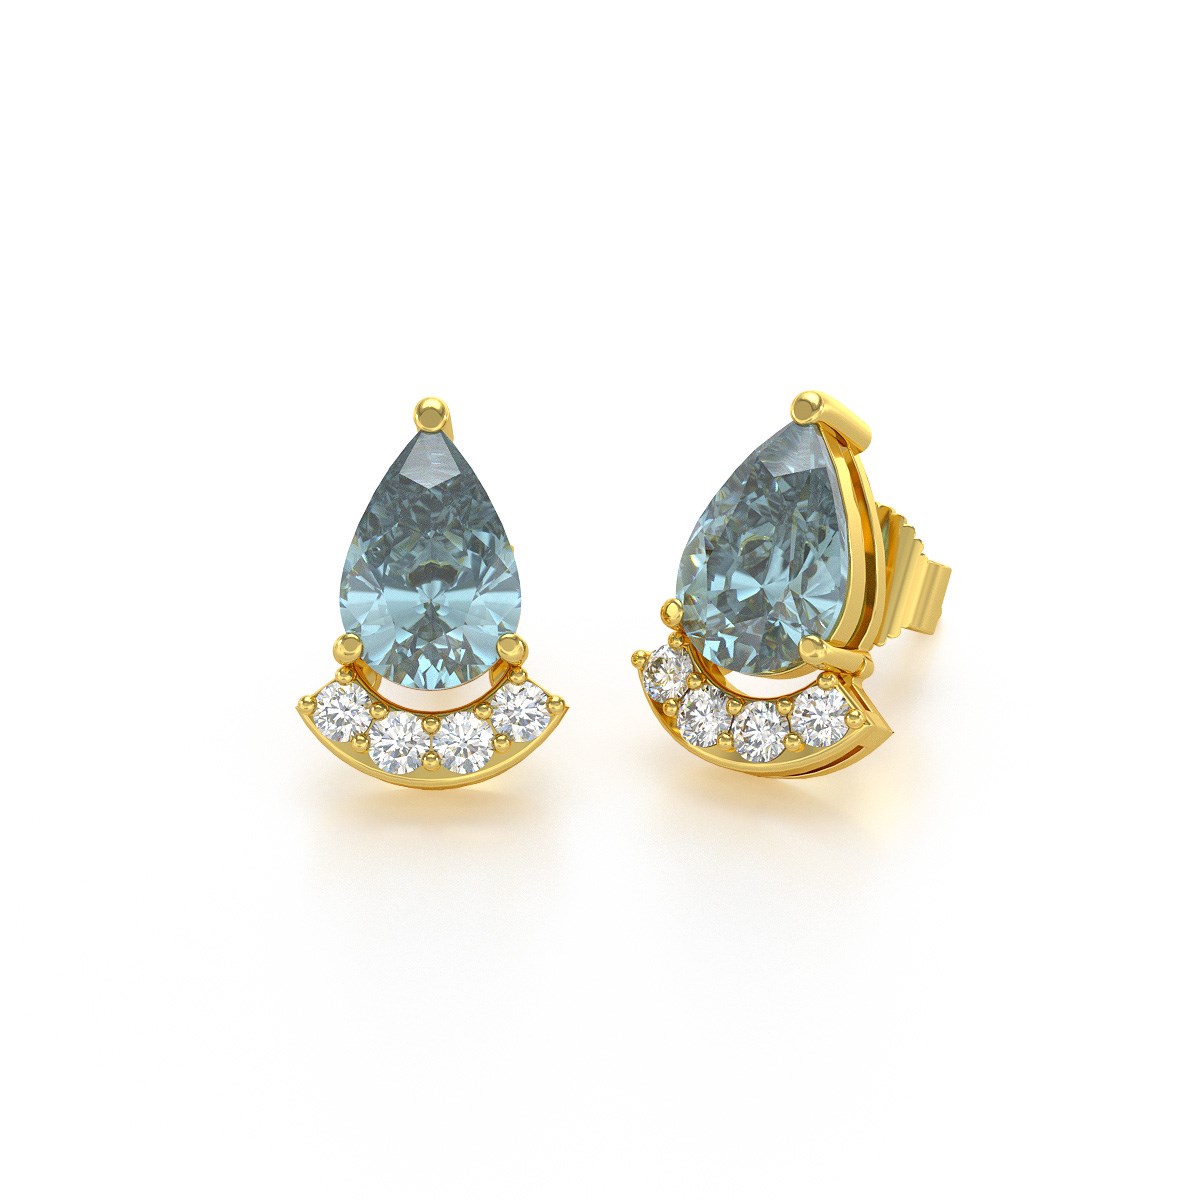 Boucles d'oreilles ADEN Or 585 Jaune Aigue-Marine forme Poire et Diamants 1.4grs - vue 2